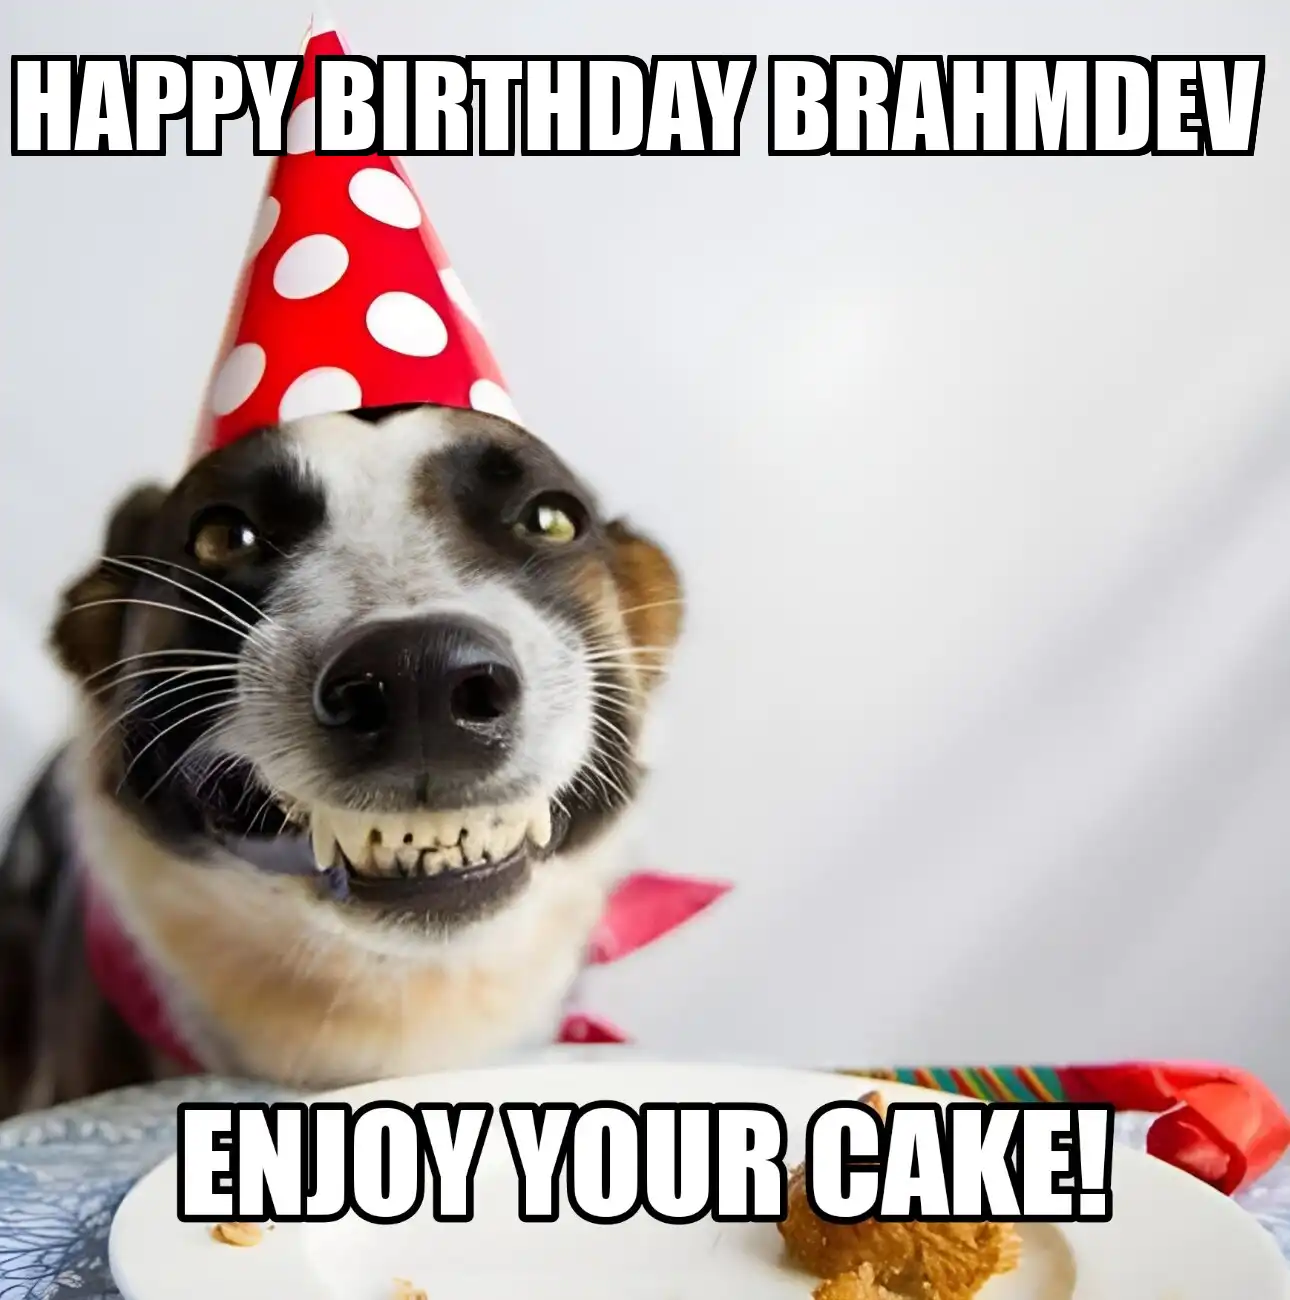 Happy Birthday Brahmdev Enjoy Your Cake Dog Meme